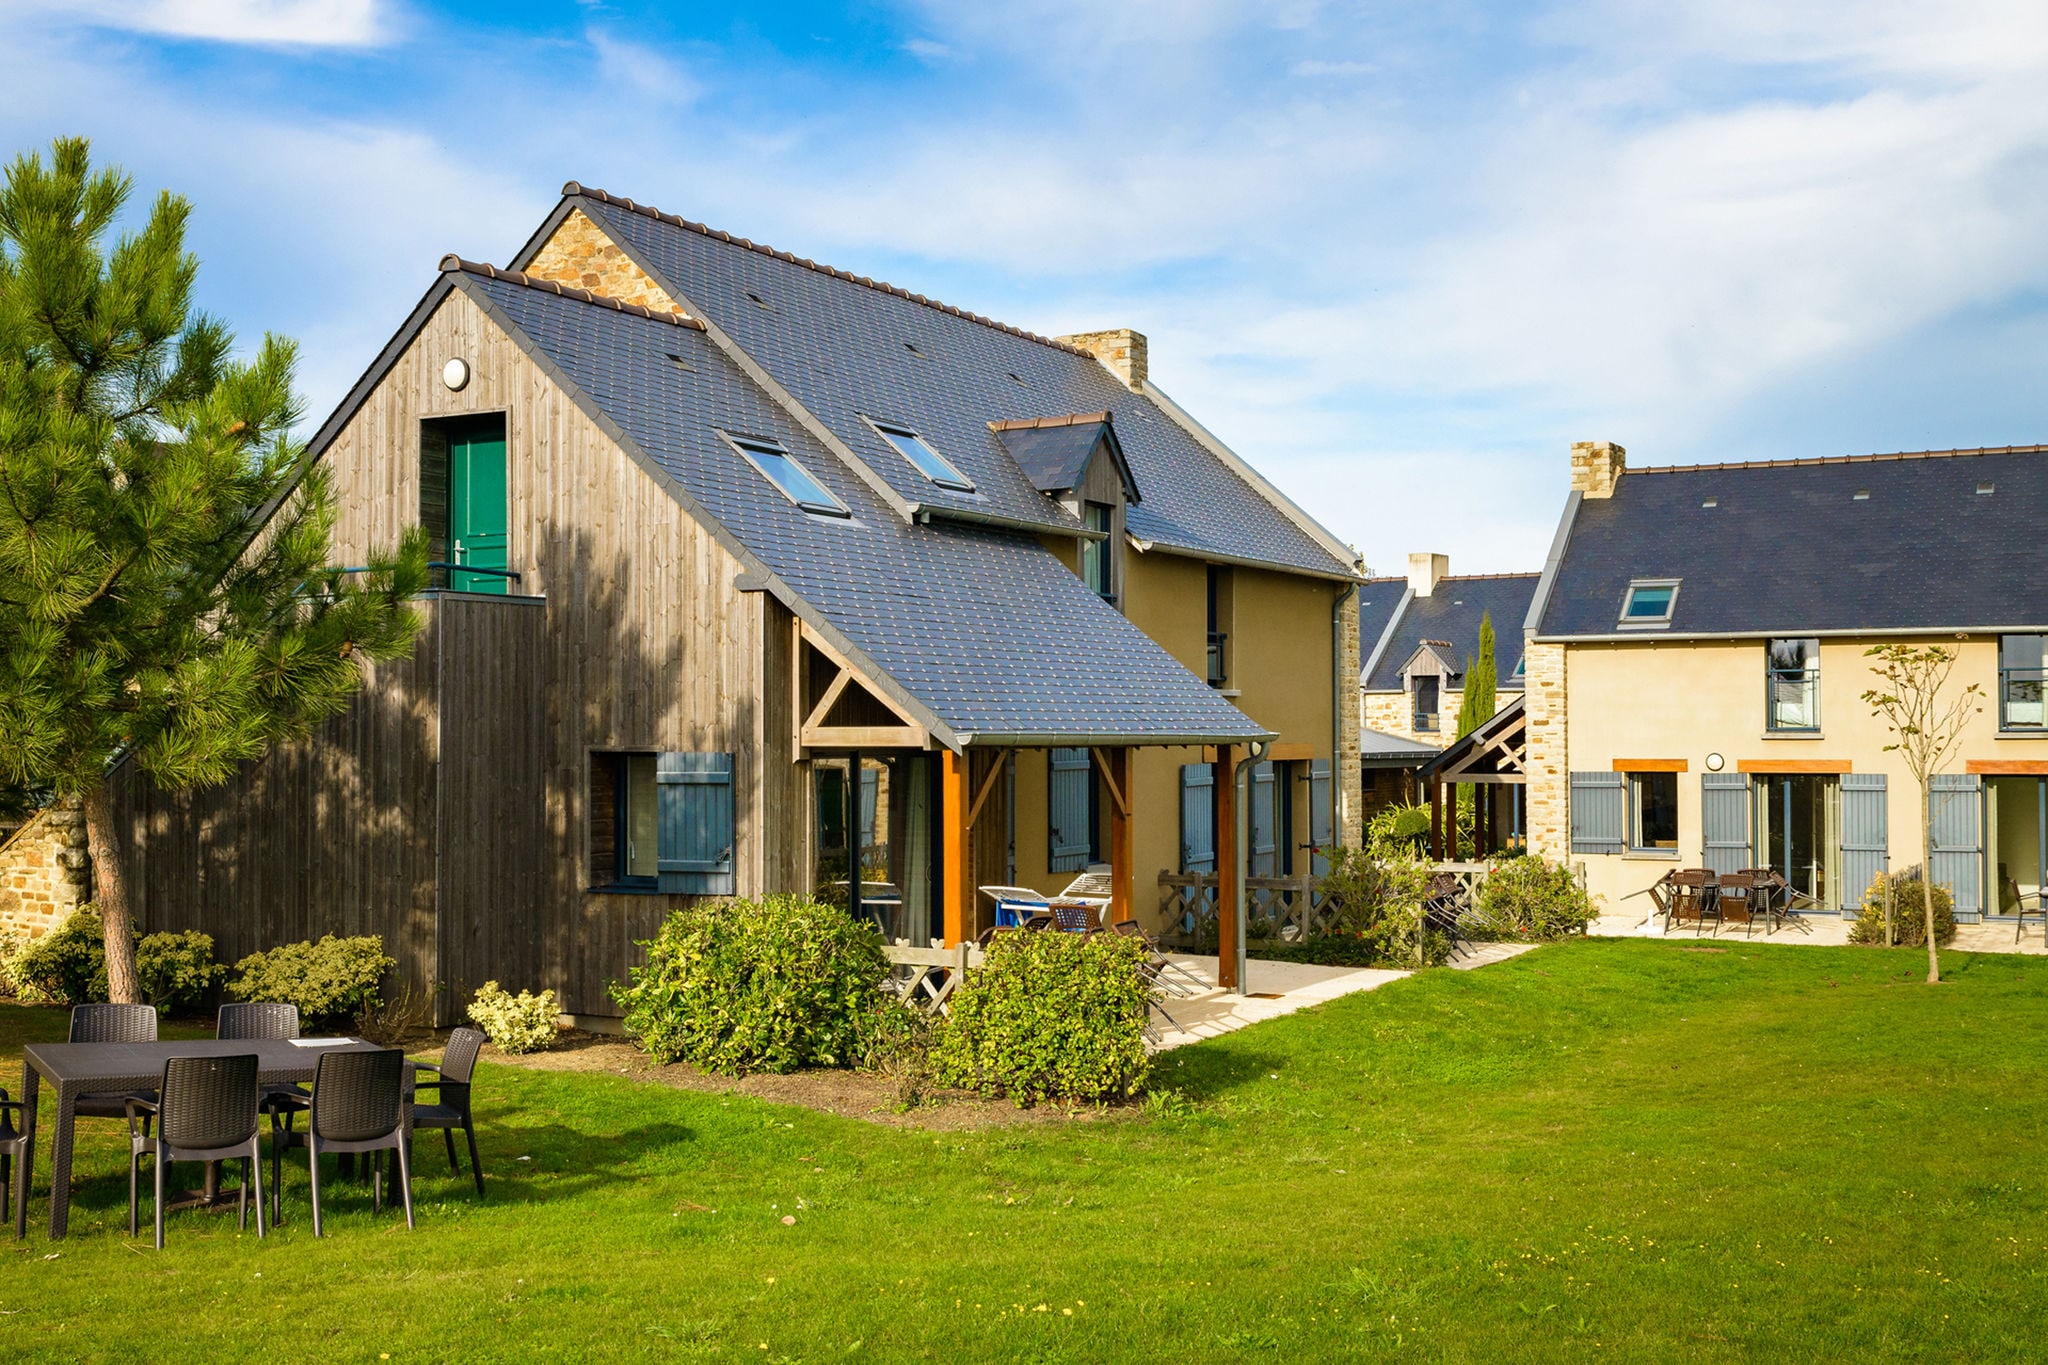 Belle maison de vacances près d'un village ostréicole breton